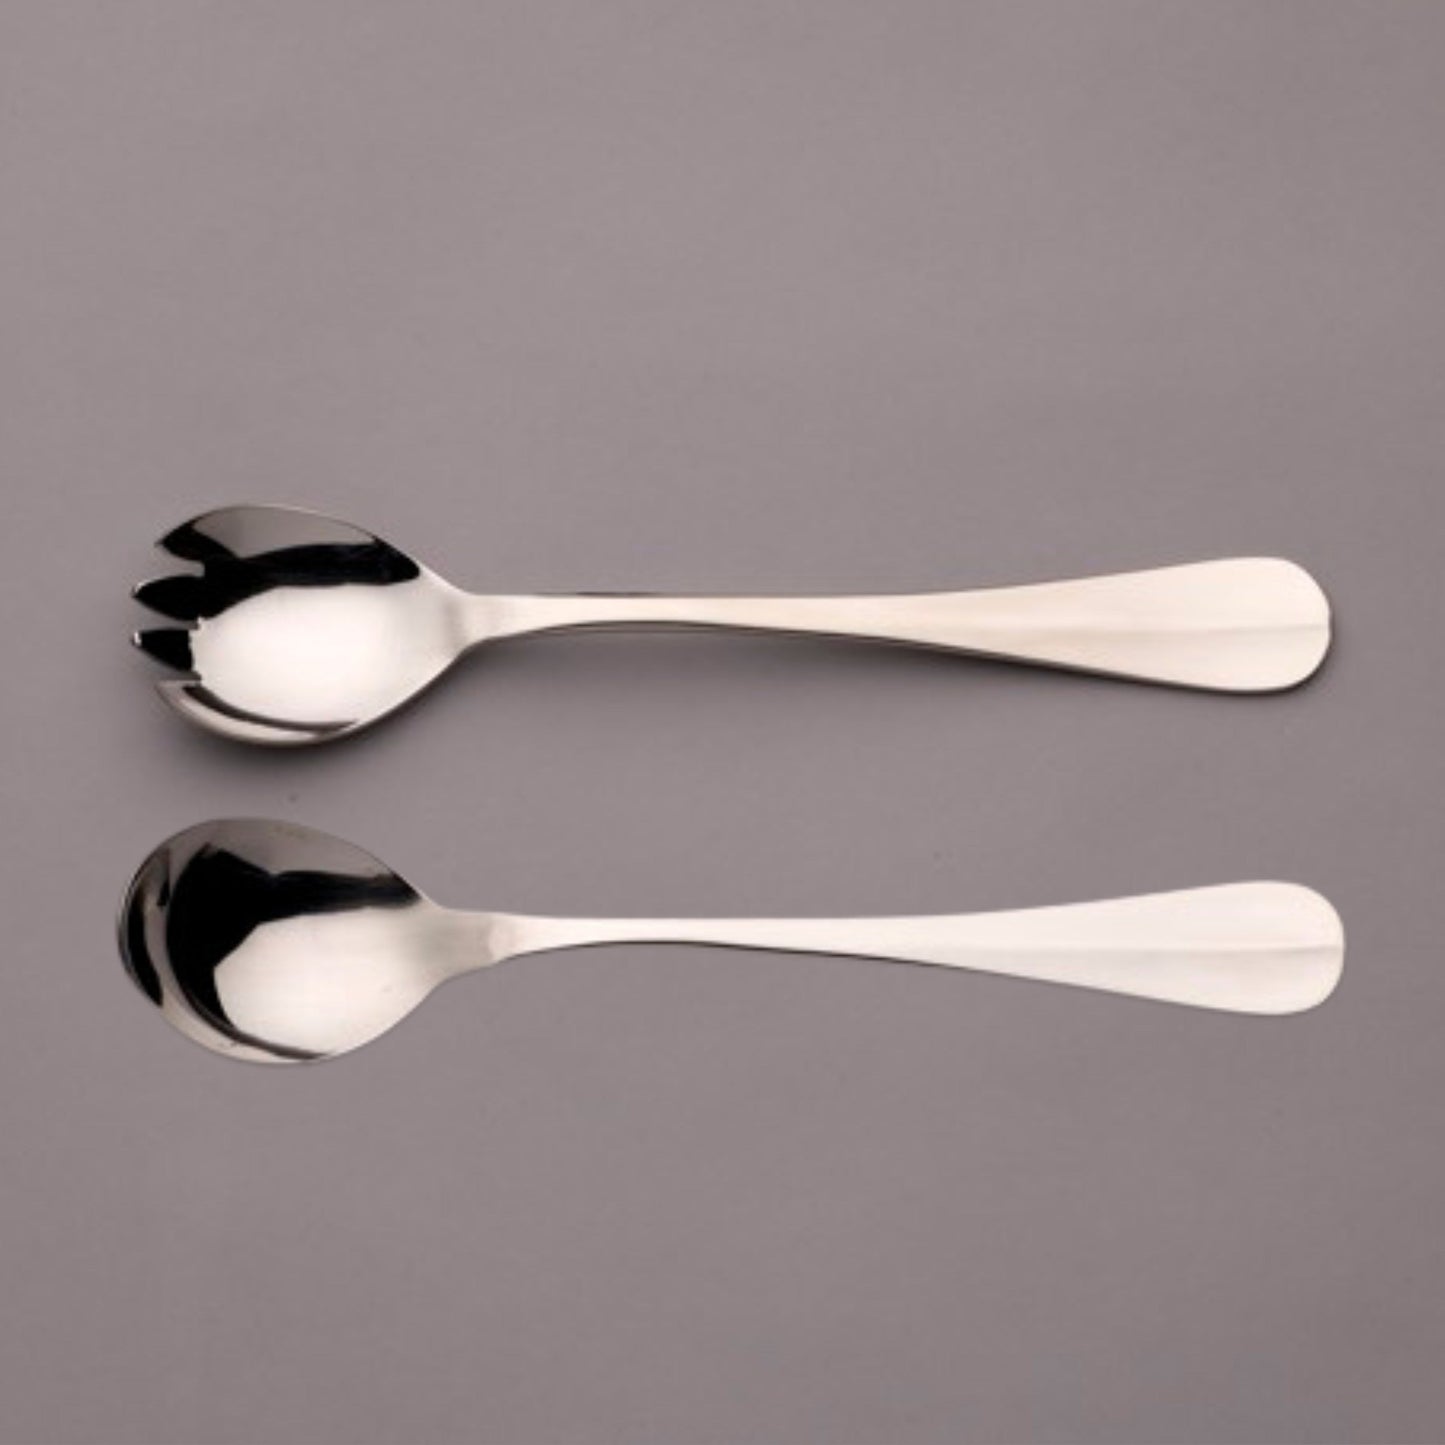 Grecian stainless steel flatware cutlery